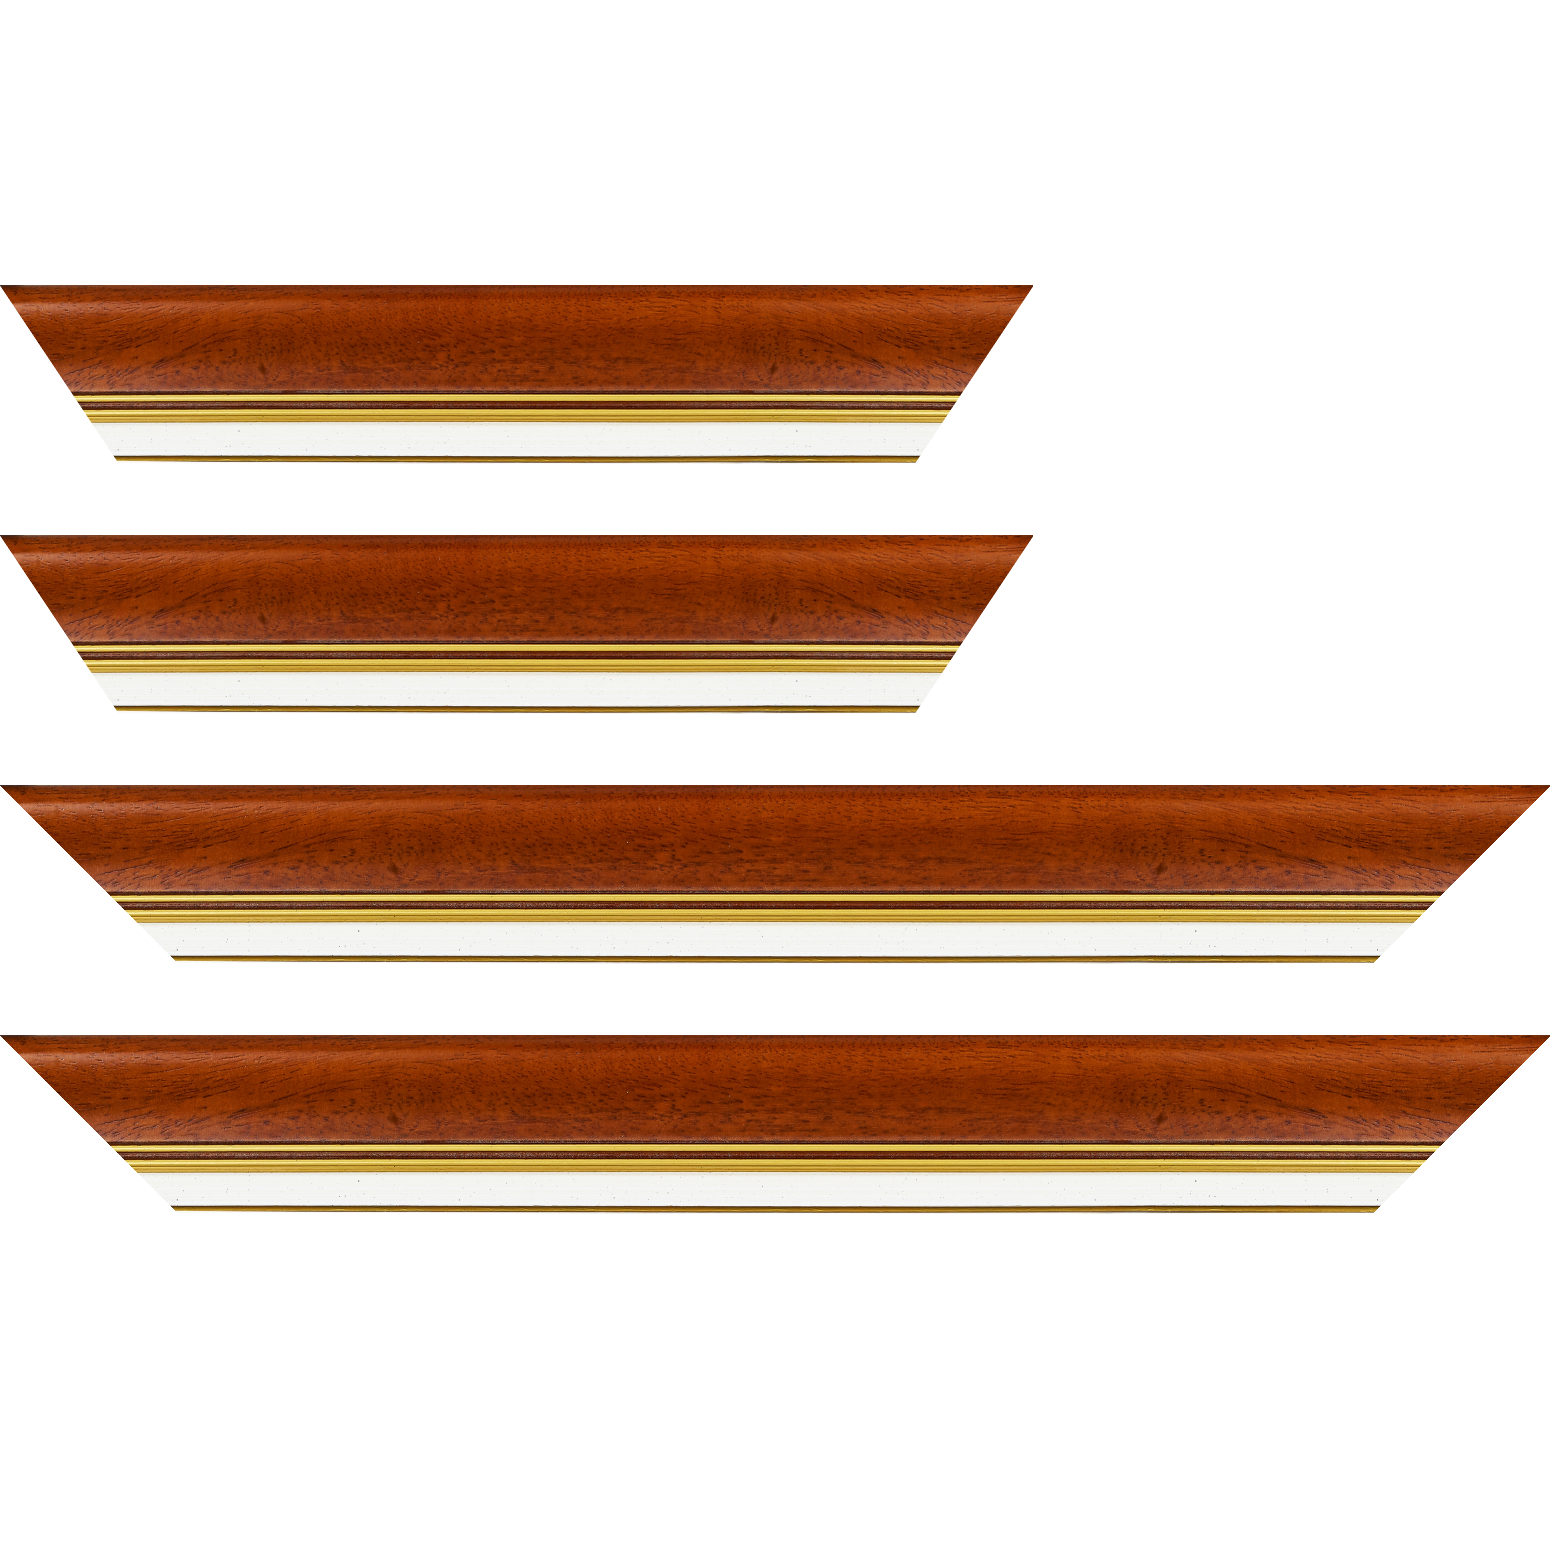 Baguette bois profil incurvé largeur 5.7cm de couleur marron ton bois marie louise blanche mouchetée filet or intégré - 34x40